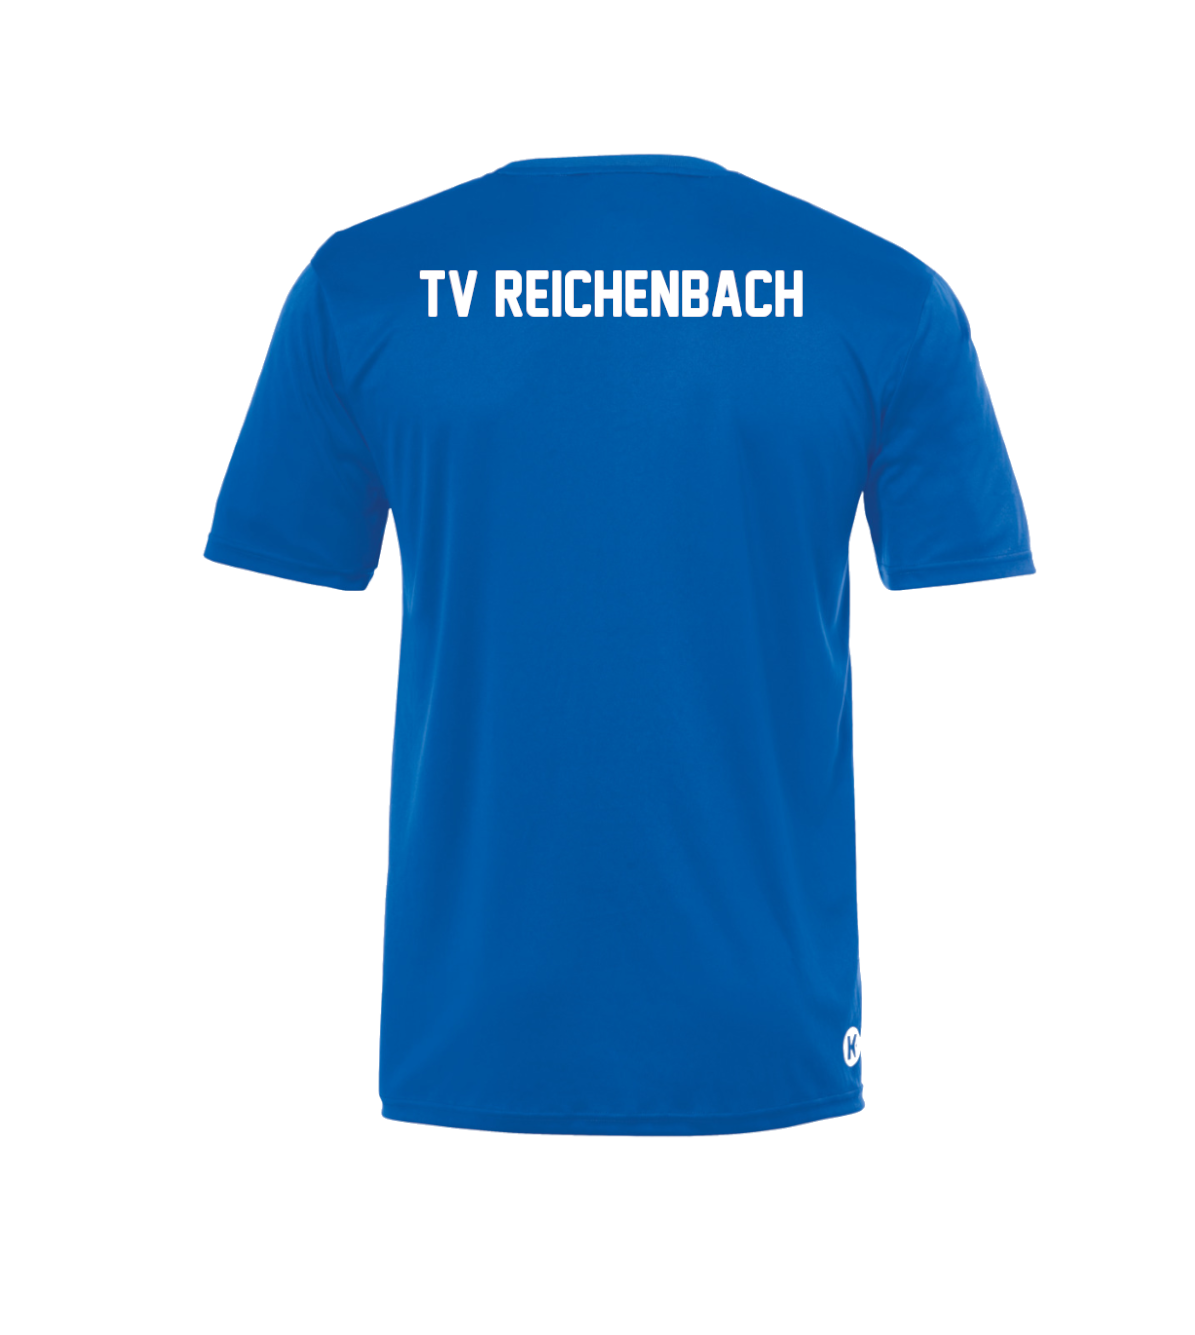 Poly Shirt Herren/Kinder TV Reichenbach